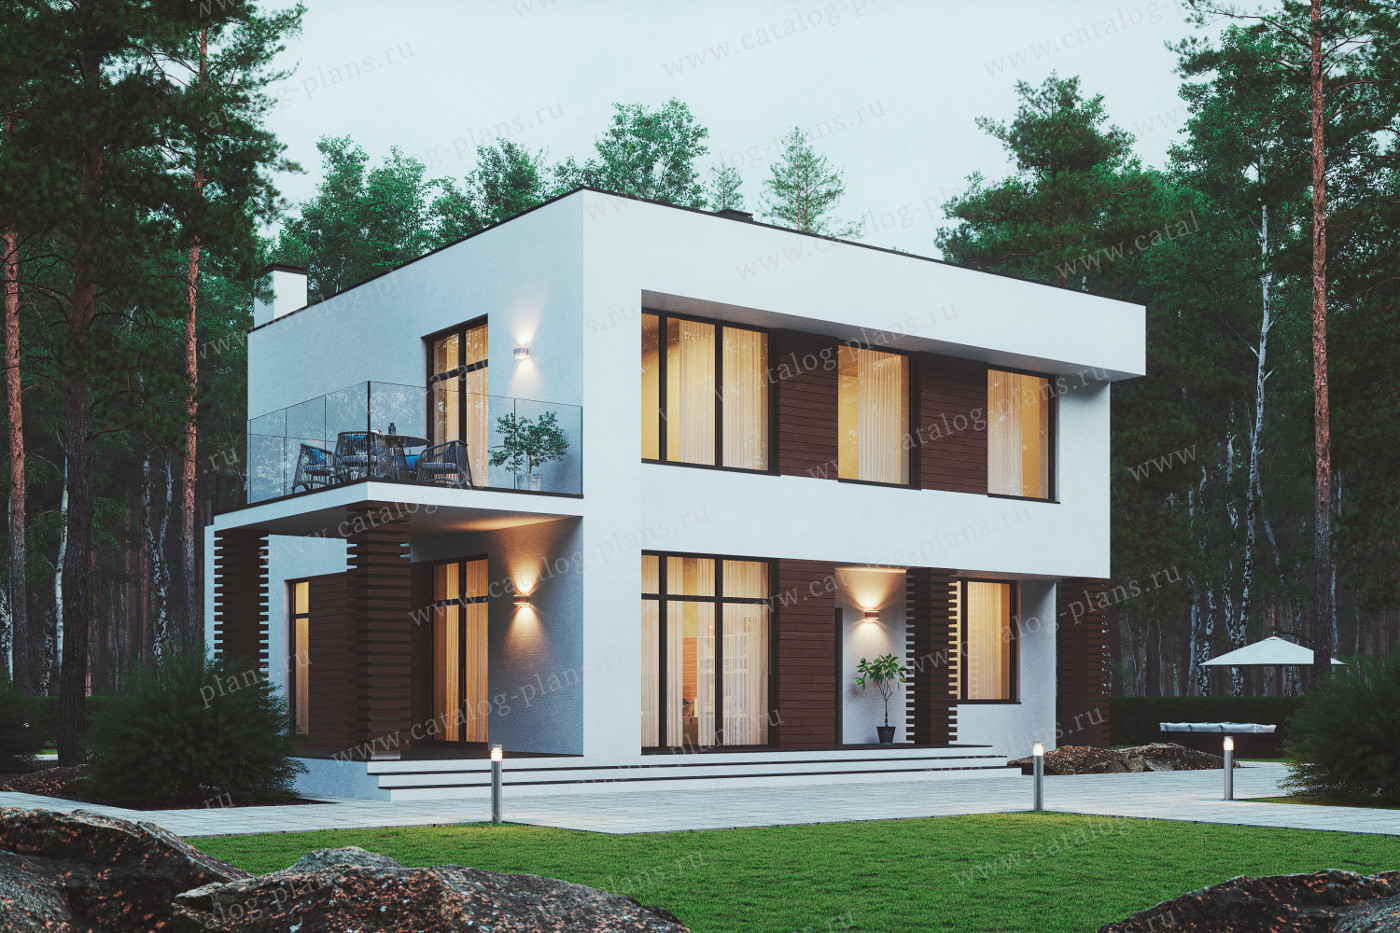 Проект 62-07AE, жилой дом, материал - газобетонные блоки 400, количество этажей - 2, архитектурный стиль - хай-тек, фундамент - монолитная ж/б плита